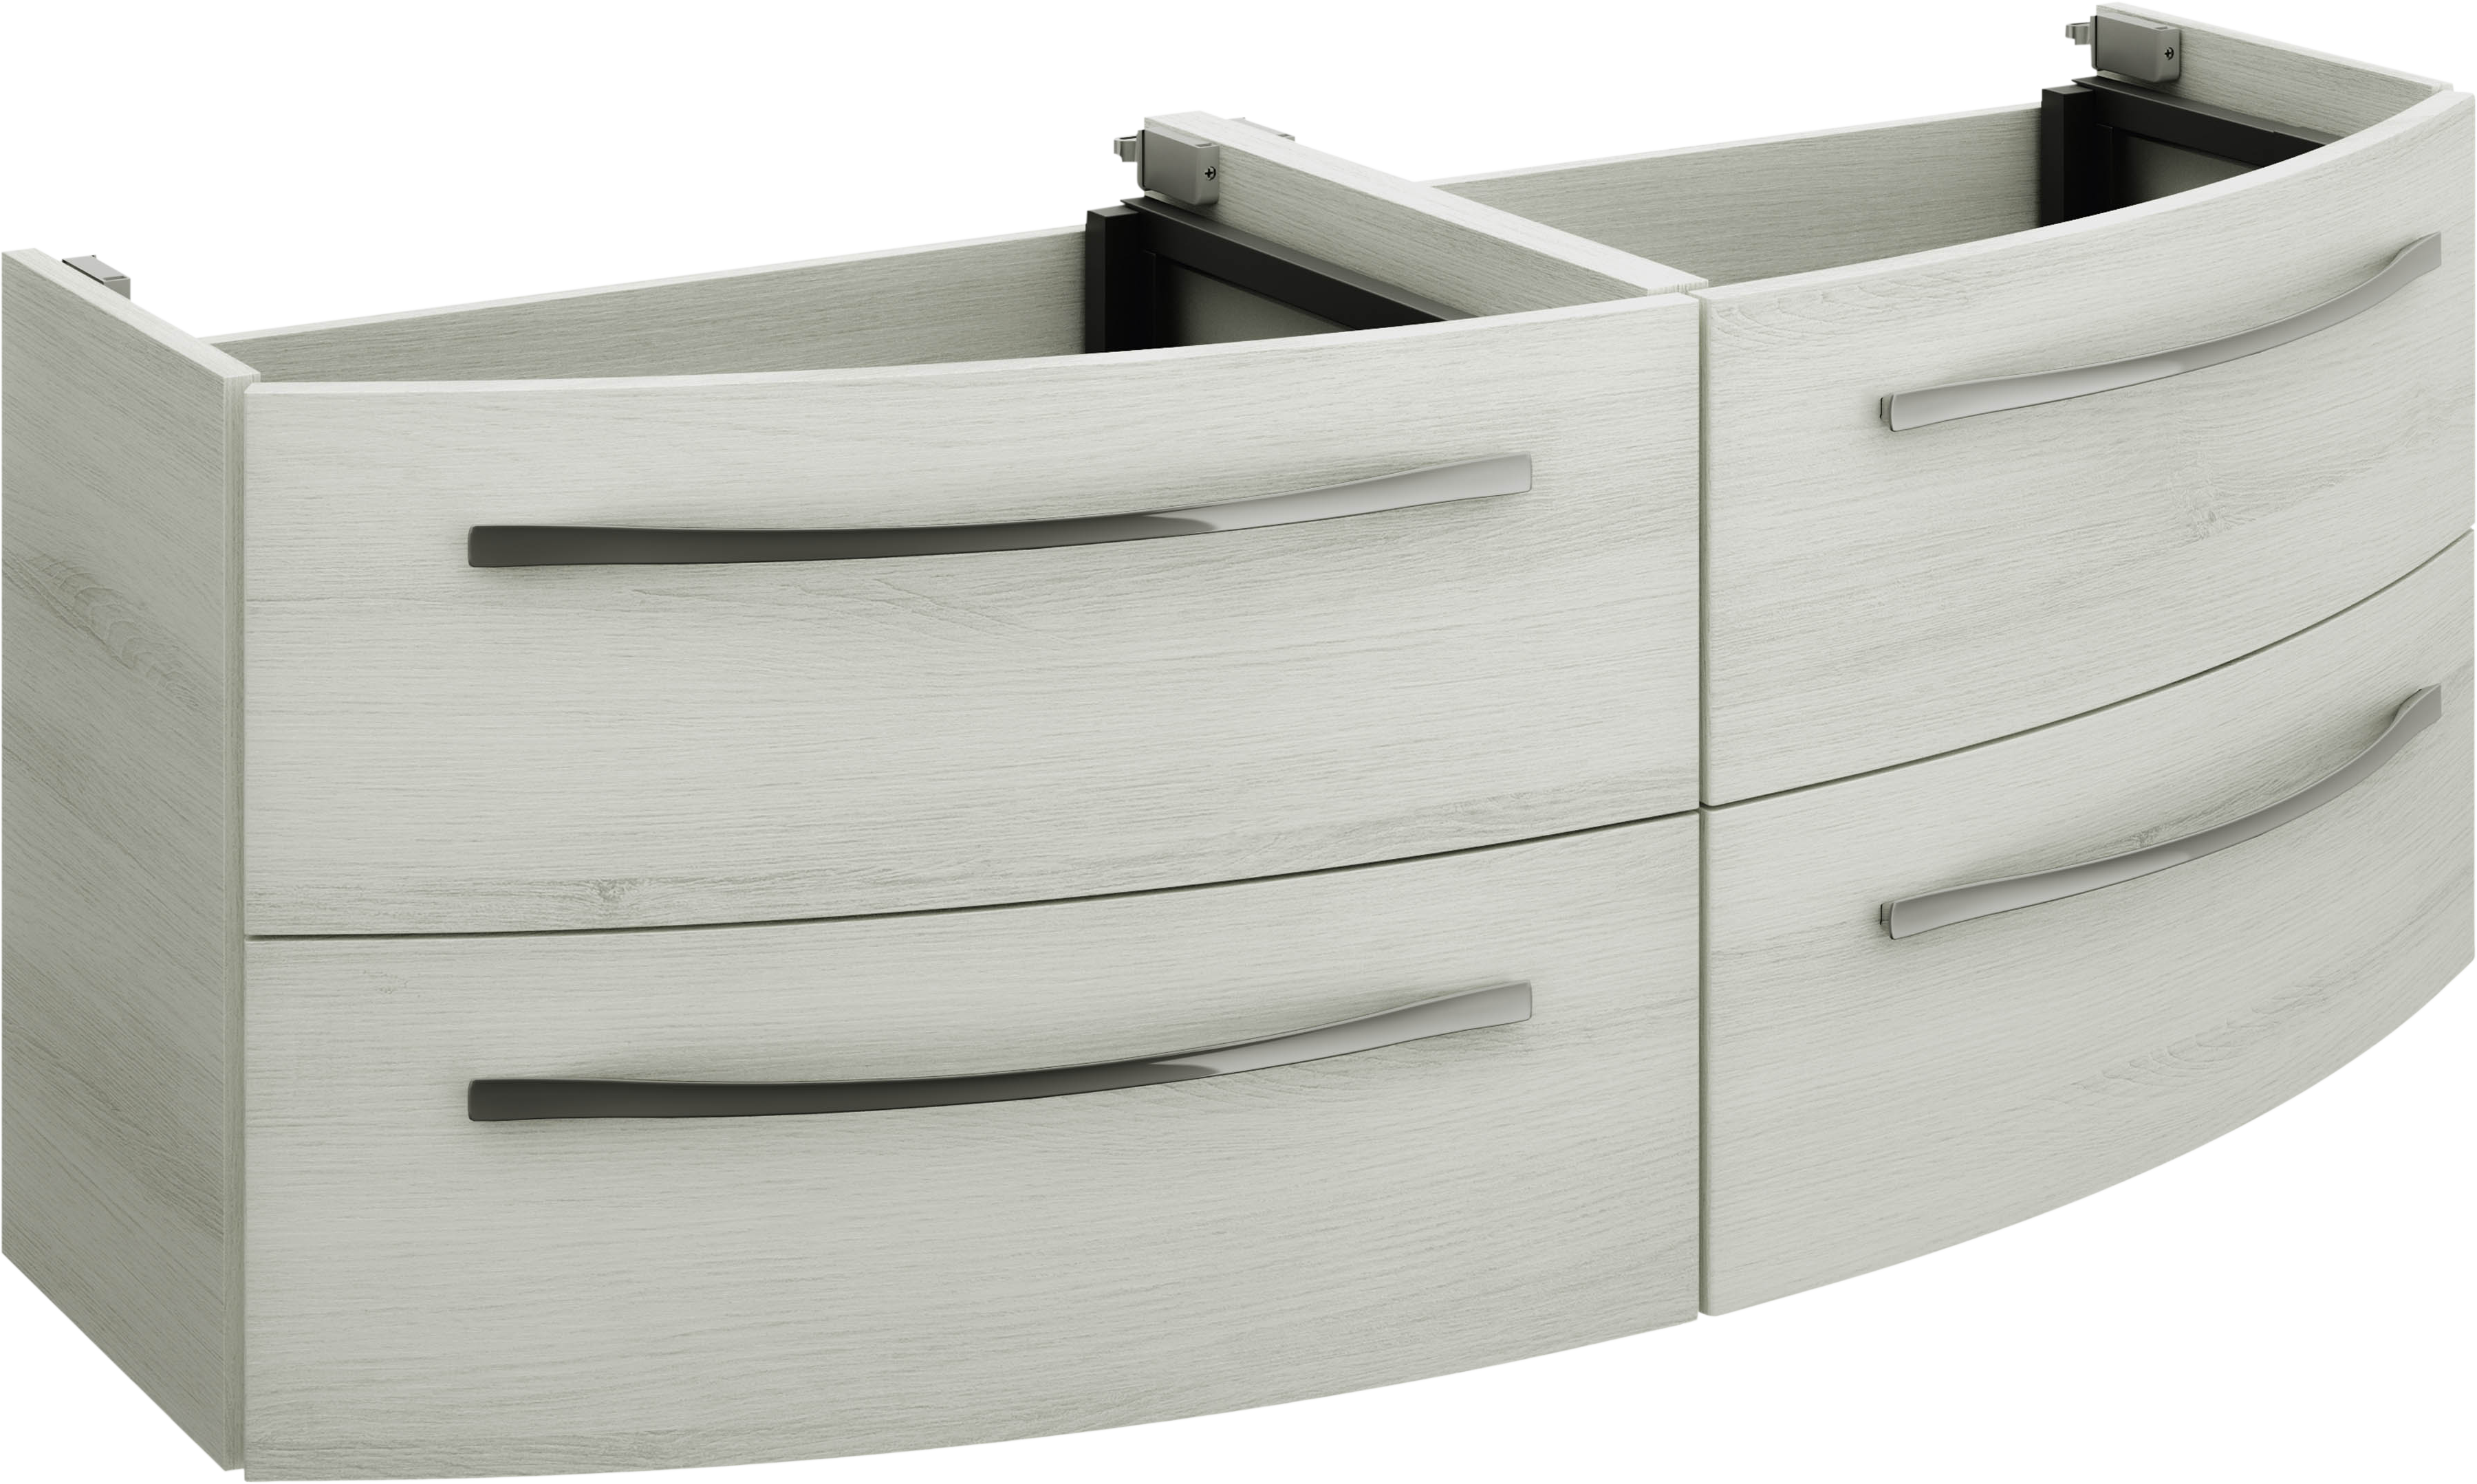 Mueble de baño image roble 130x48 cm